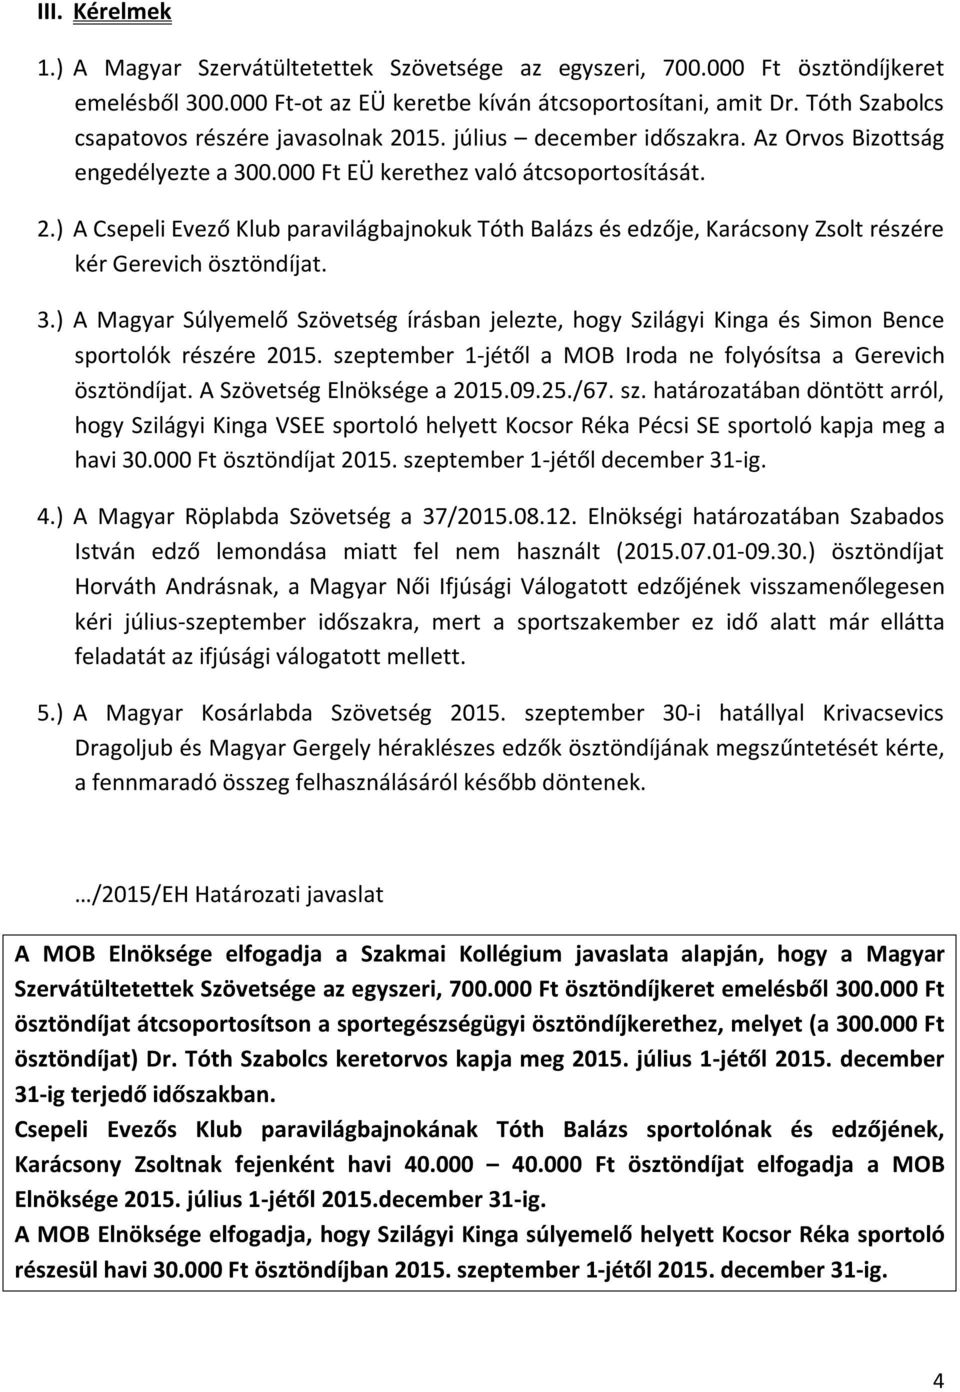 3.) A Magyar Súlyemelő Szövetség írásban jelezte, hogy Szilágyi Kinga és Simon Bence sportolók részére 2015. szeptember 1-jétől a MOB Iroda ne folyósítsa a Gerevich ösztöndíjat.